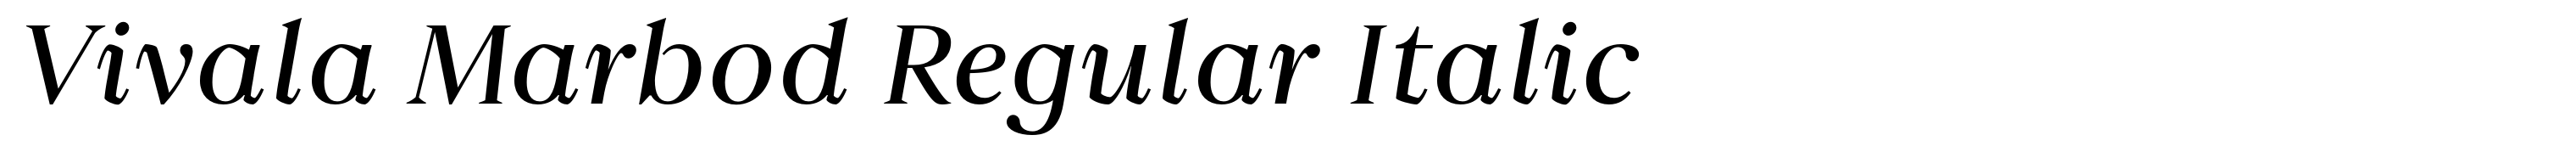 Vivala Marbod Regular Italic